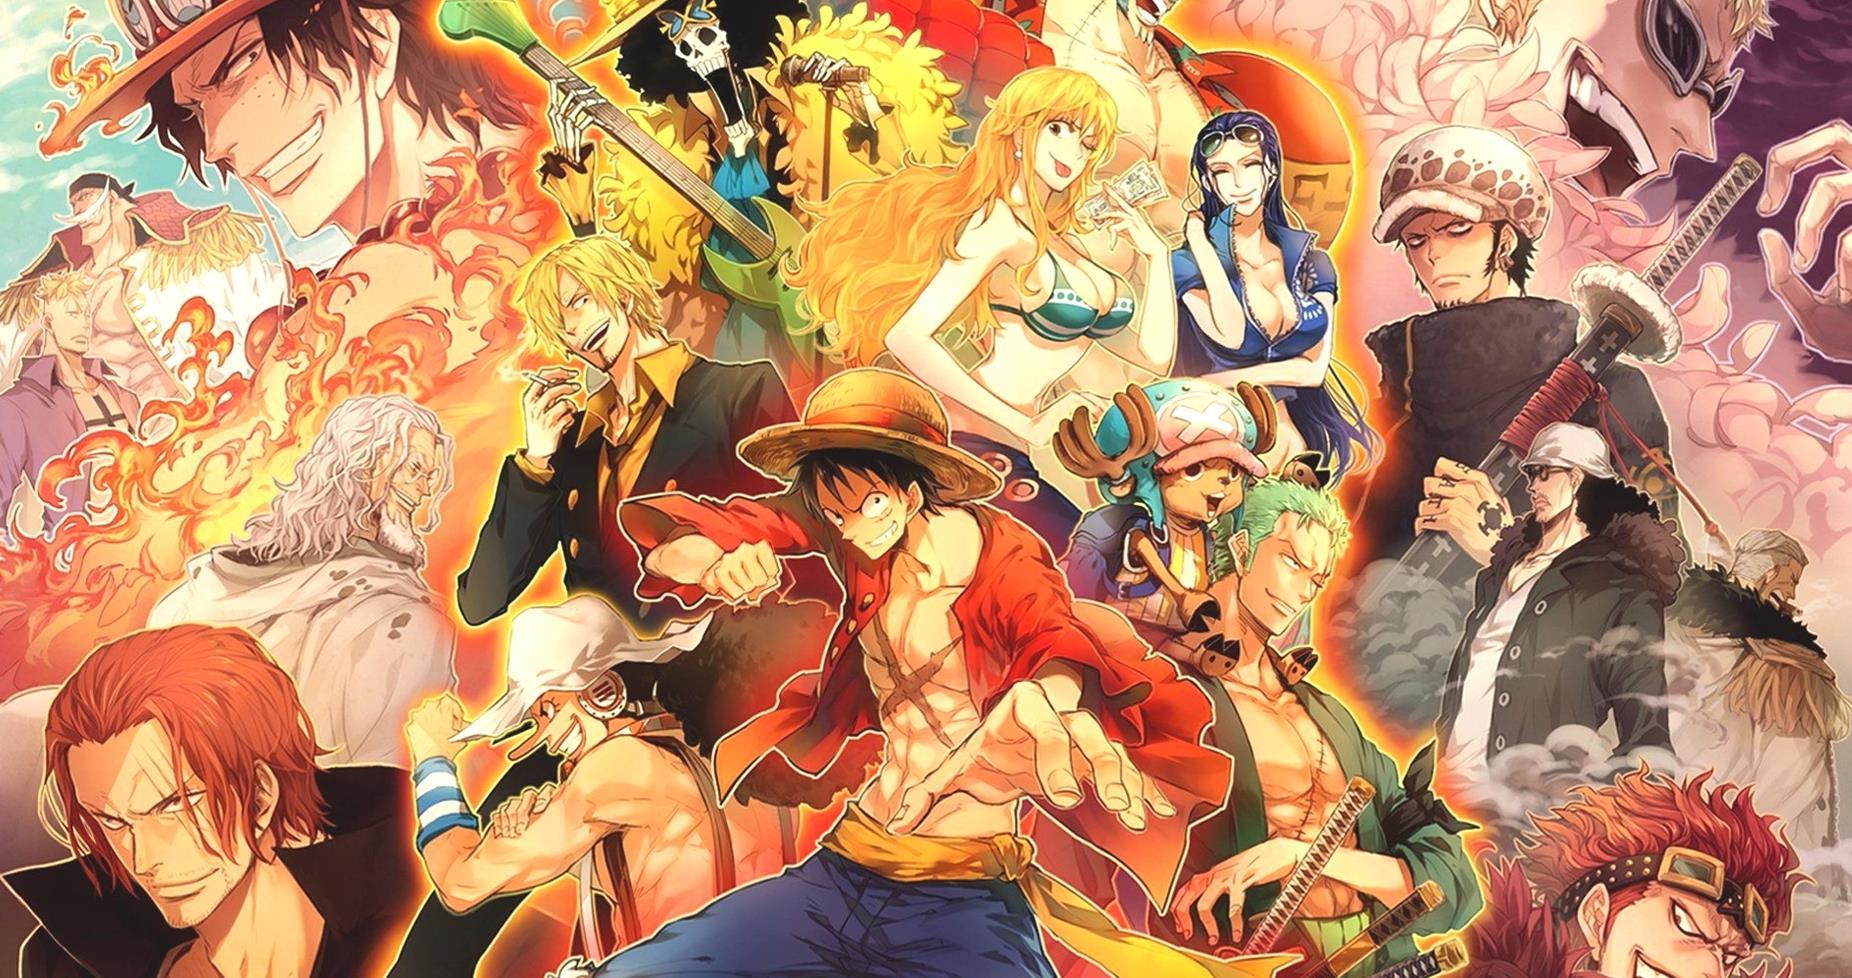 Le vendite del manga One Piece battono un altro record 500 milioni G6dOhzL0n 1 1